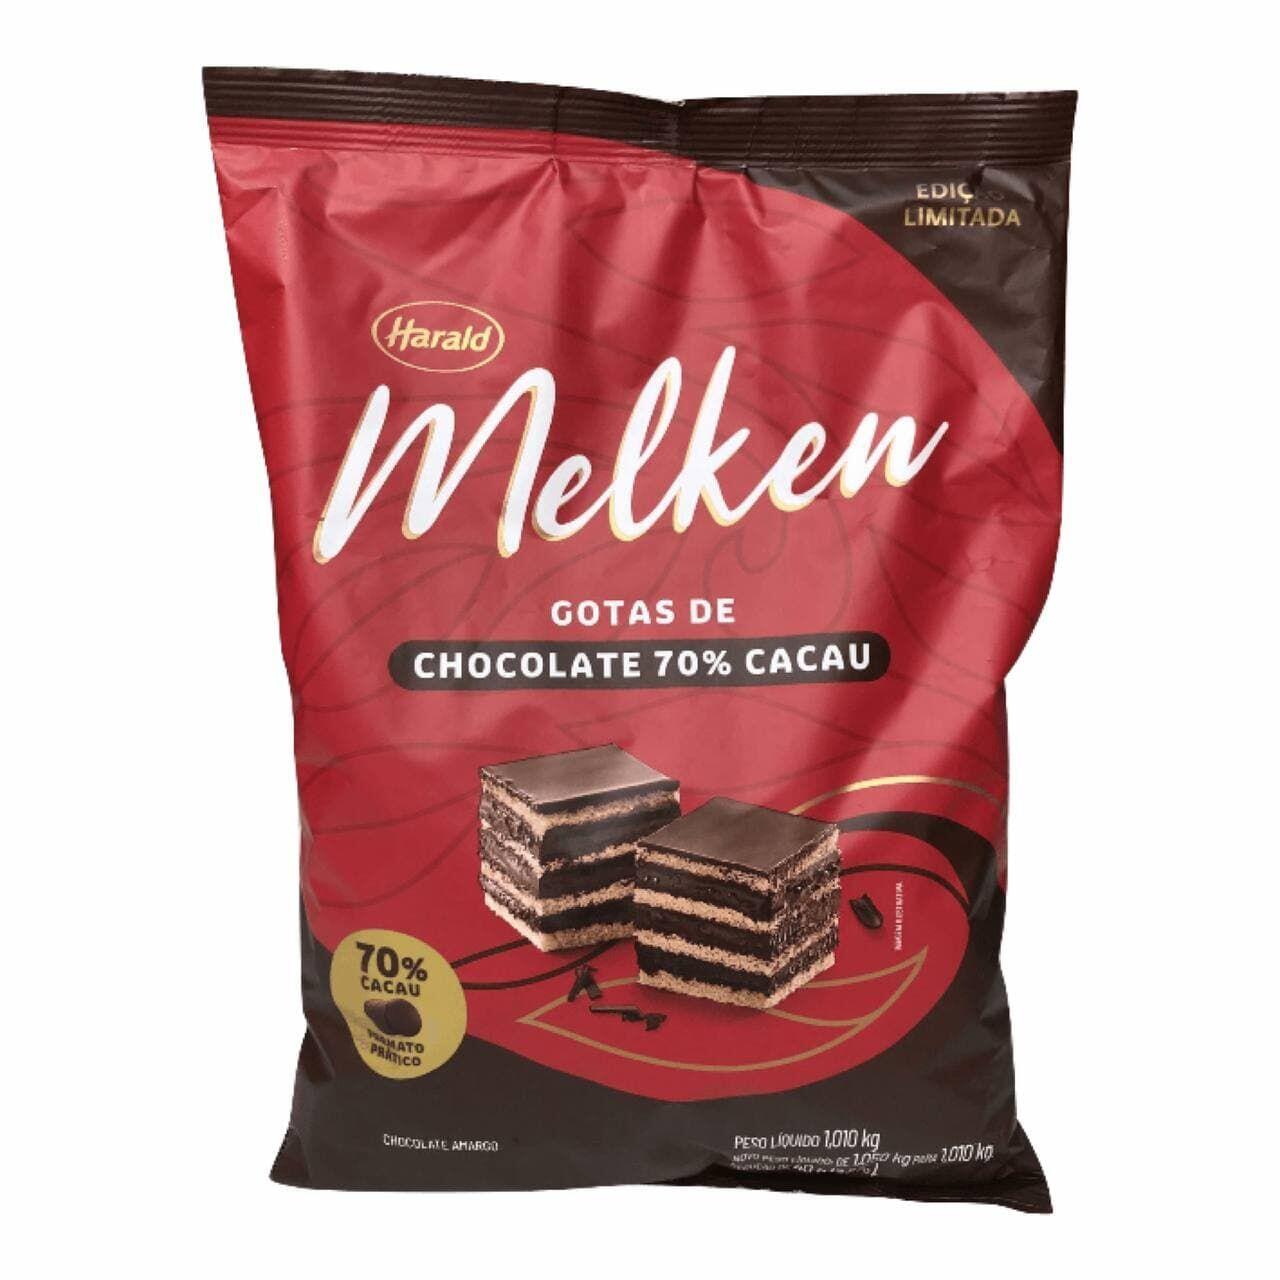 Comprar Chocolate amargo nobre 70% cacau 1kg em gotas Harald Melken - a  partir de R$61,99 - Gerô Festas